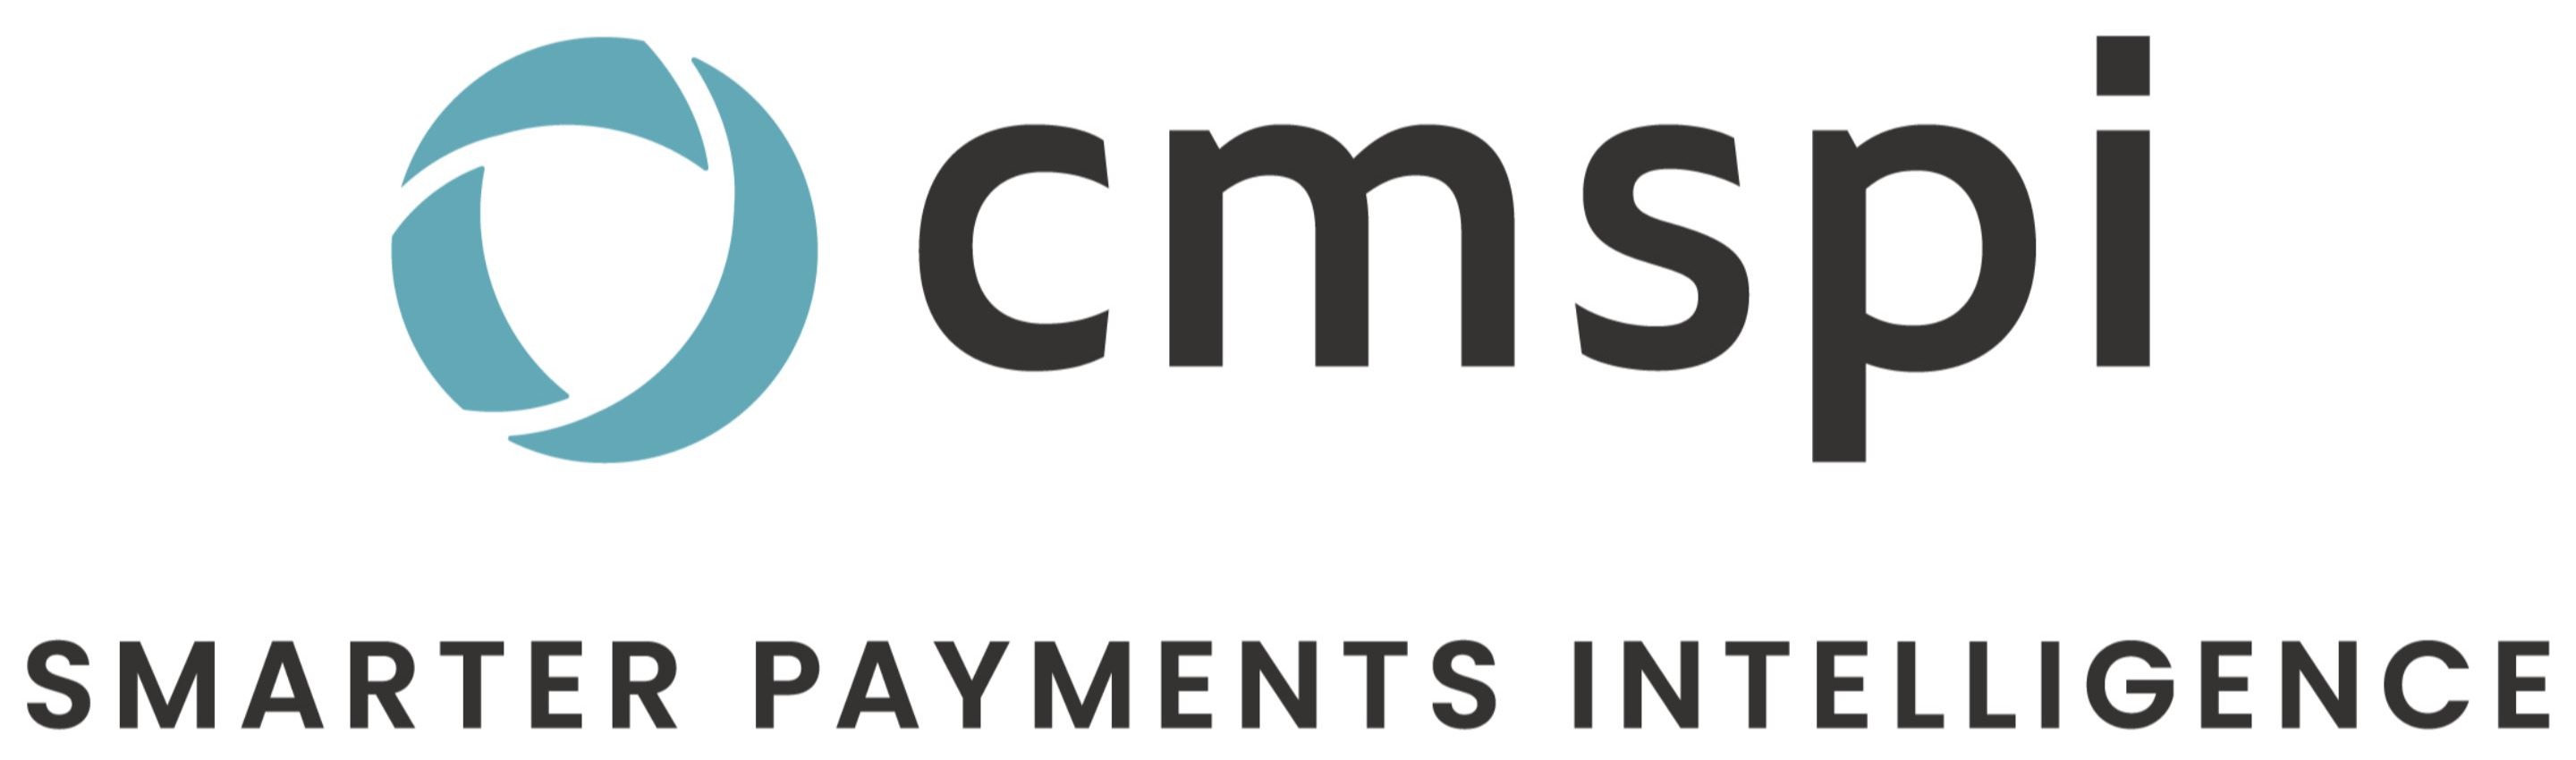 CMSPI, Smarter Payments Intelligence